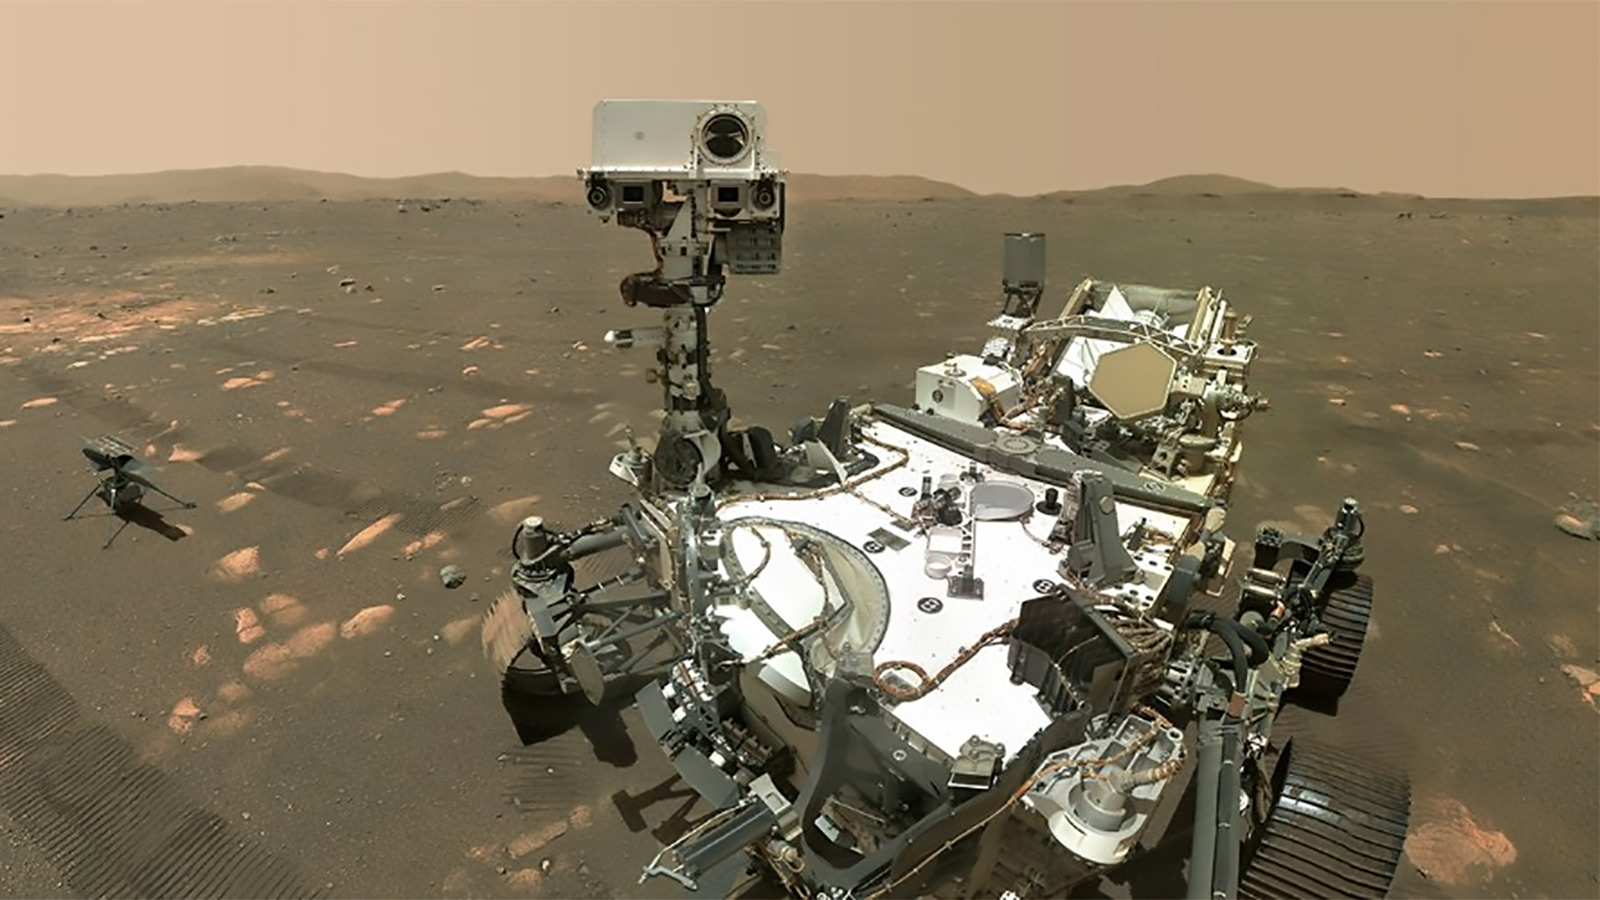 NASA Mars Perseverance rover captures teeny, tiny Martian moon Deimos